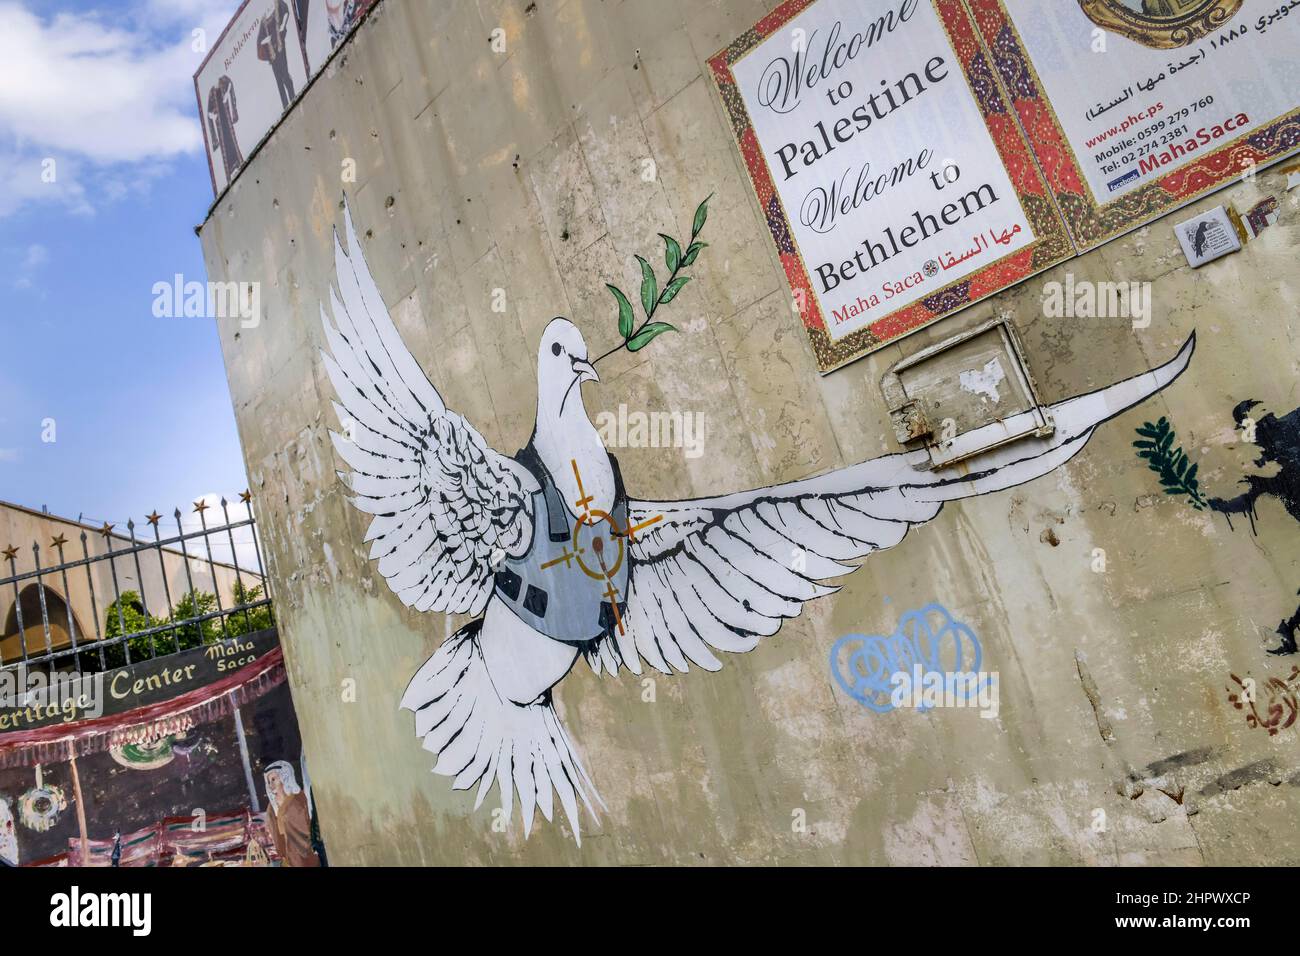 Graffiti von Banksy, Grenzmauer zu Israel, Bethlehem, Westjordanland Stockfoto